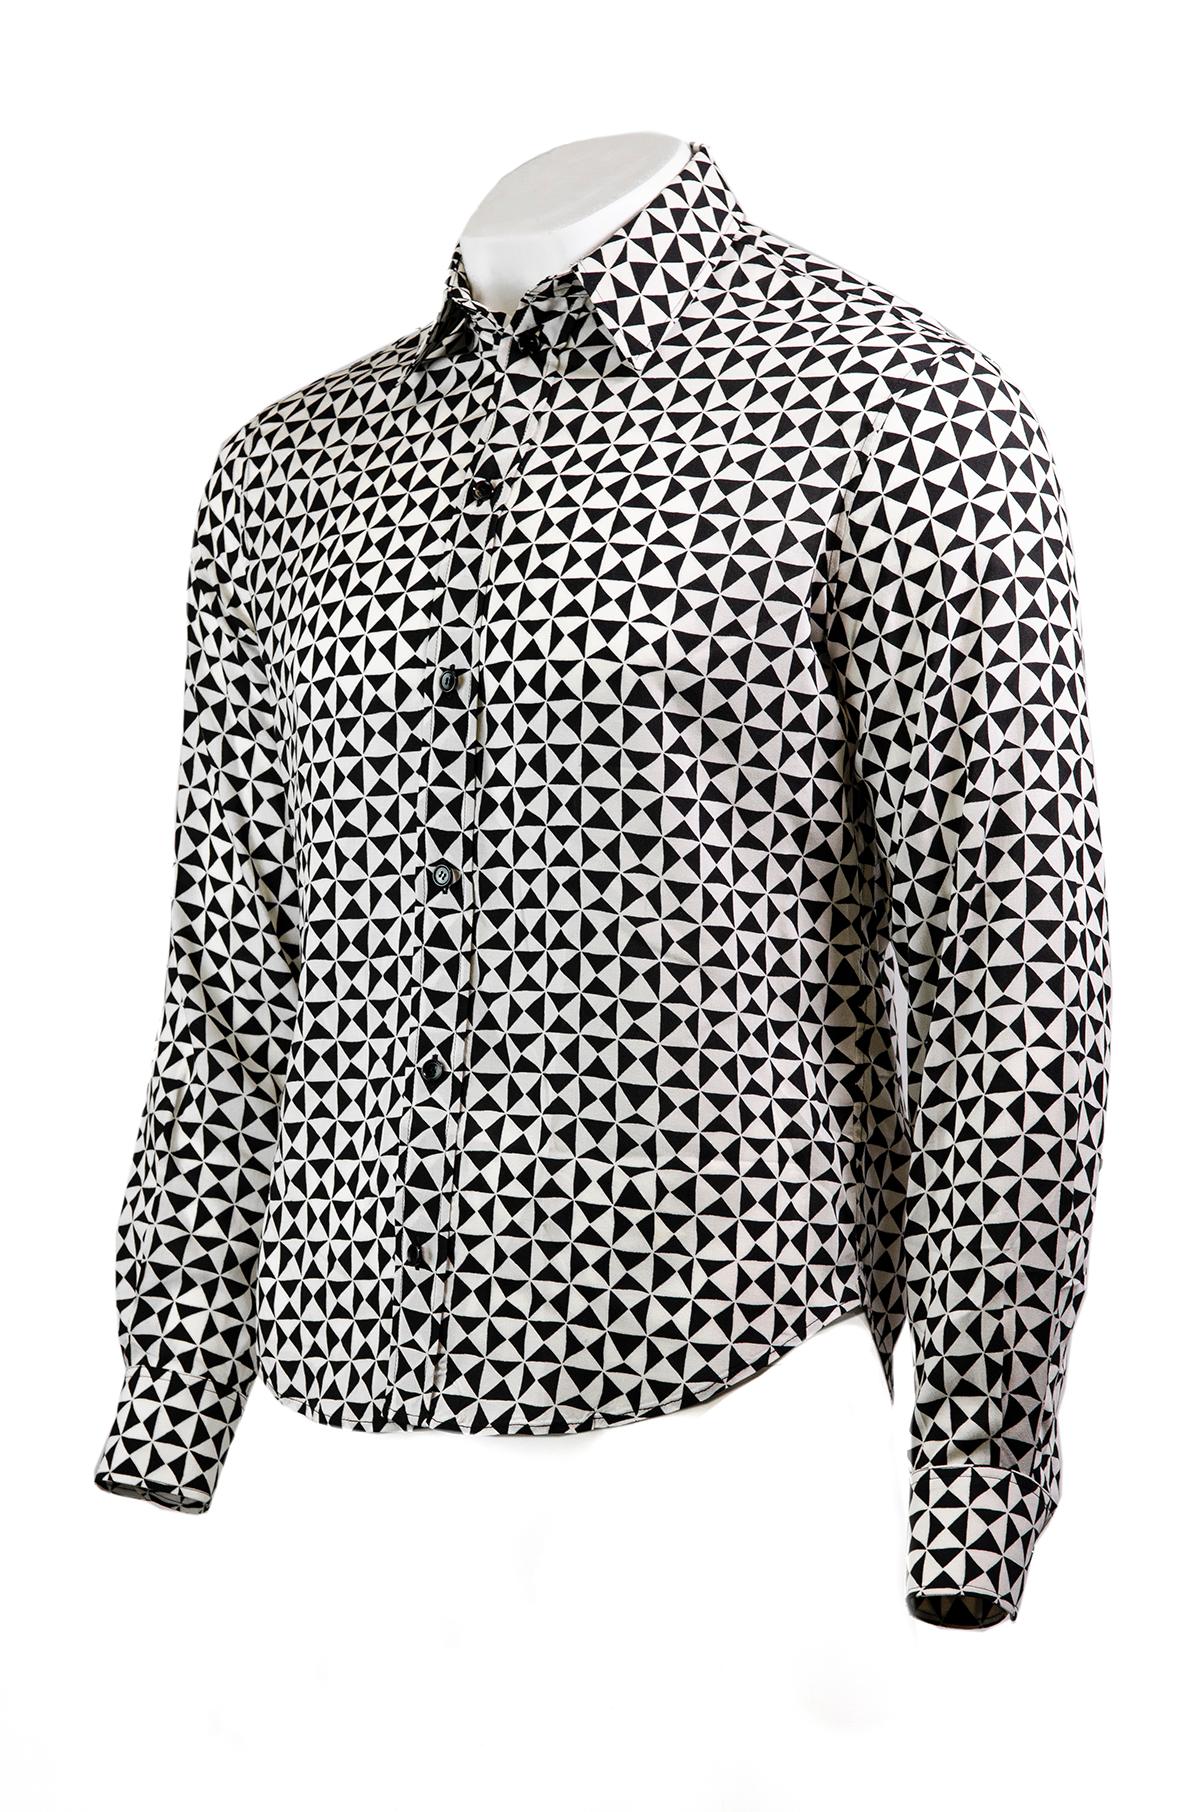 Monochromes Hemd von Celine by Heldi Slimane.

Dieses von den 70ern inspirierte Hemd aus weicher Viskose hat eine lockere Passform, ein schwarz-weißes Dreiecksmuster, einen Kragenausschnitt, lange Ärmel mit Manschetten und einen Knopfverschluss